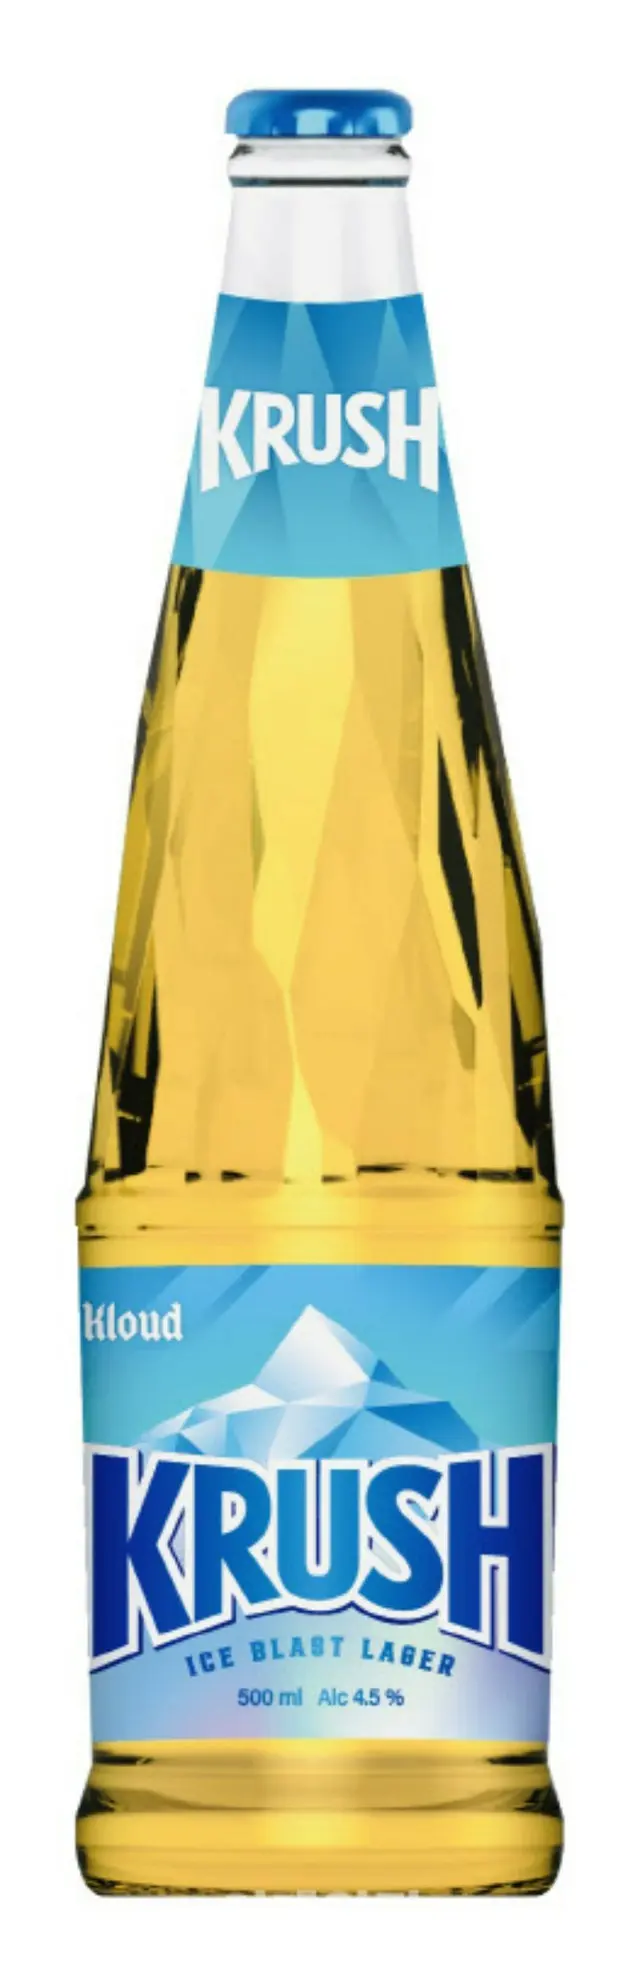 ロッテ七星飲料が新たなビールを発売へ、既存の概念を覆す「クラッシュ」＝韓国